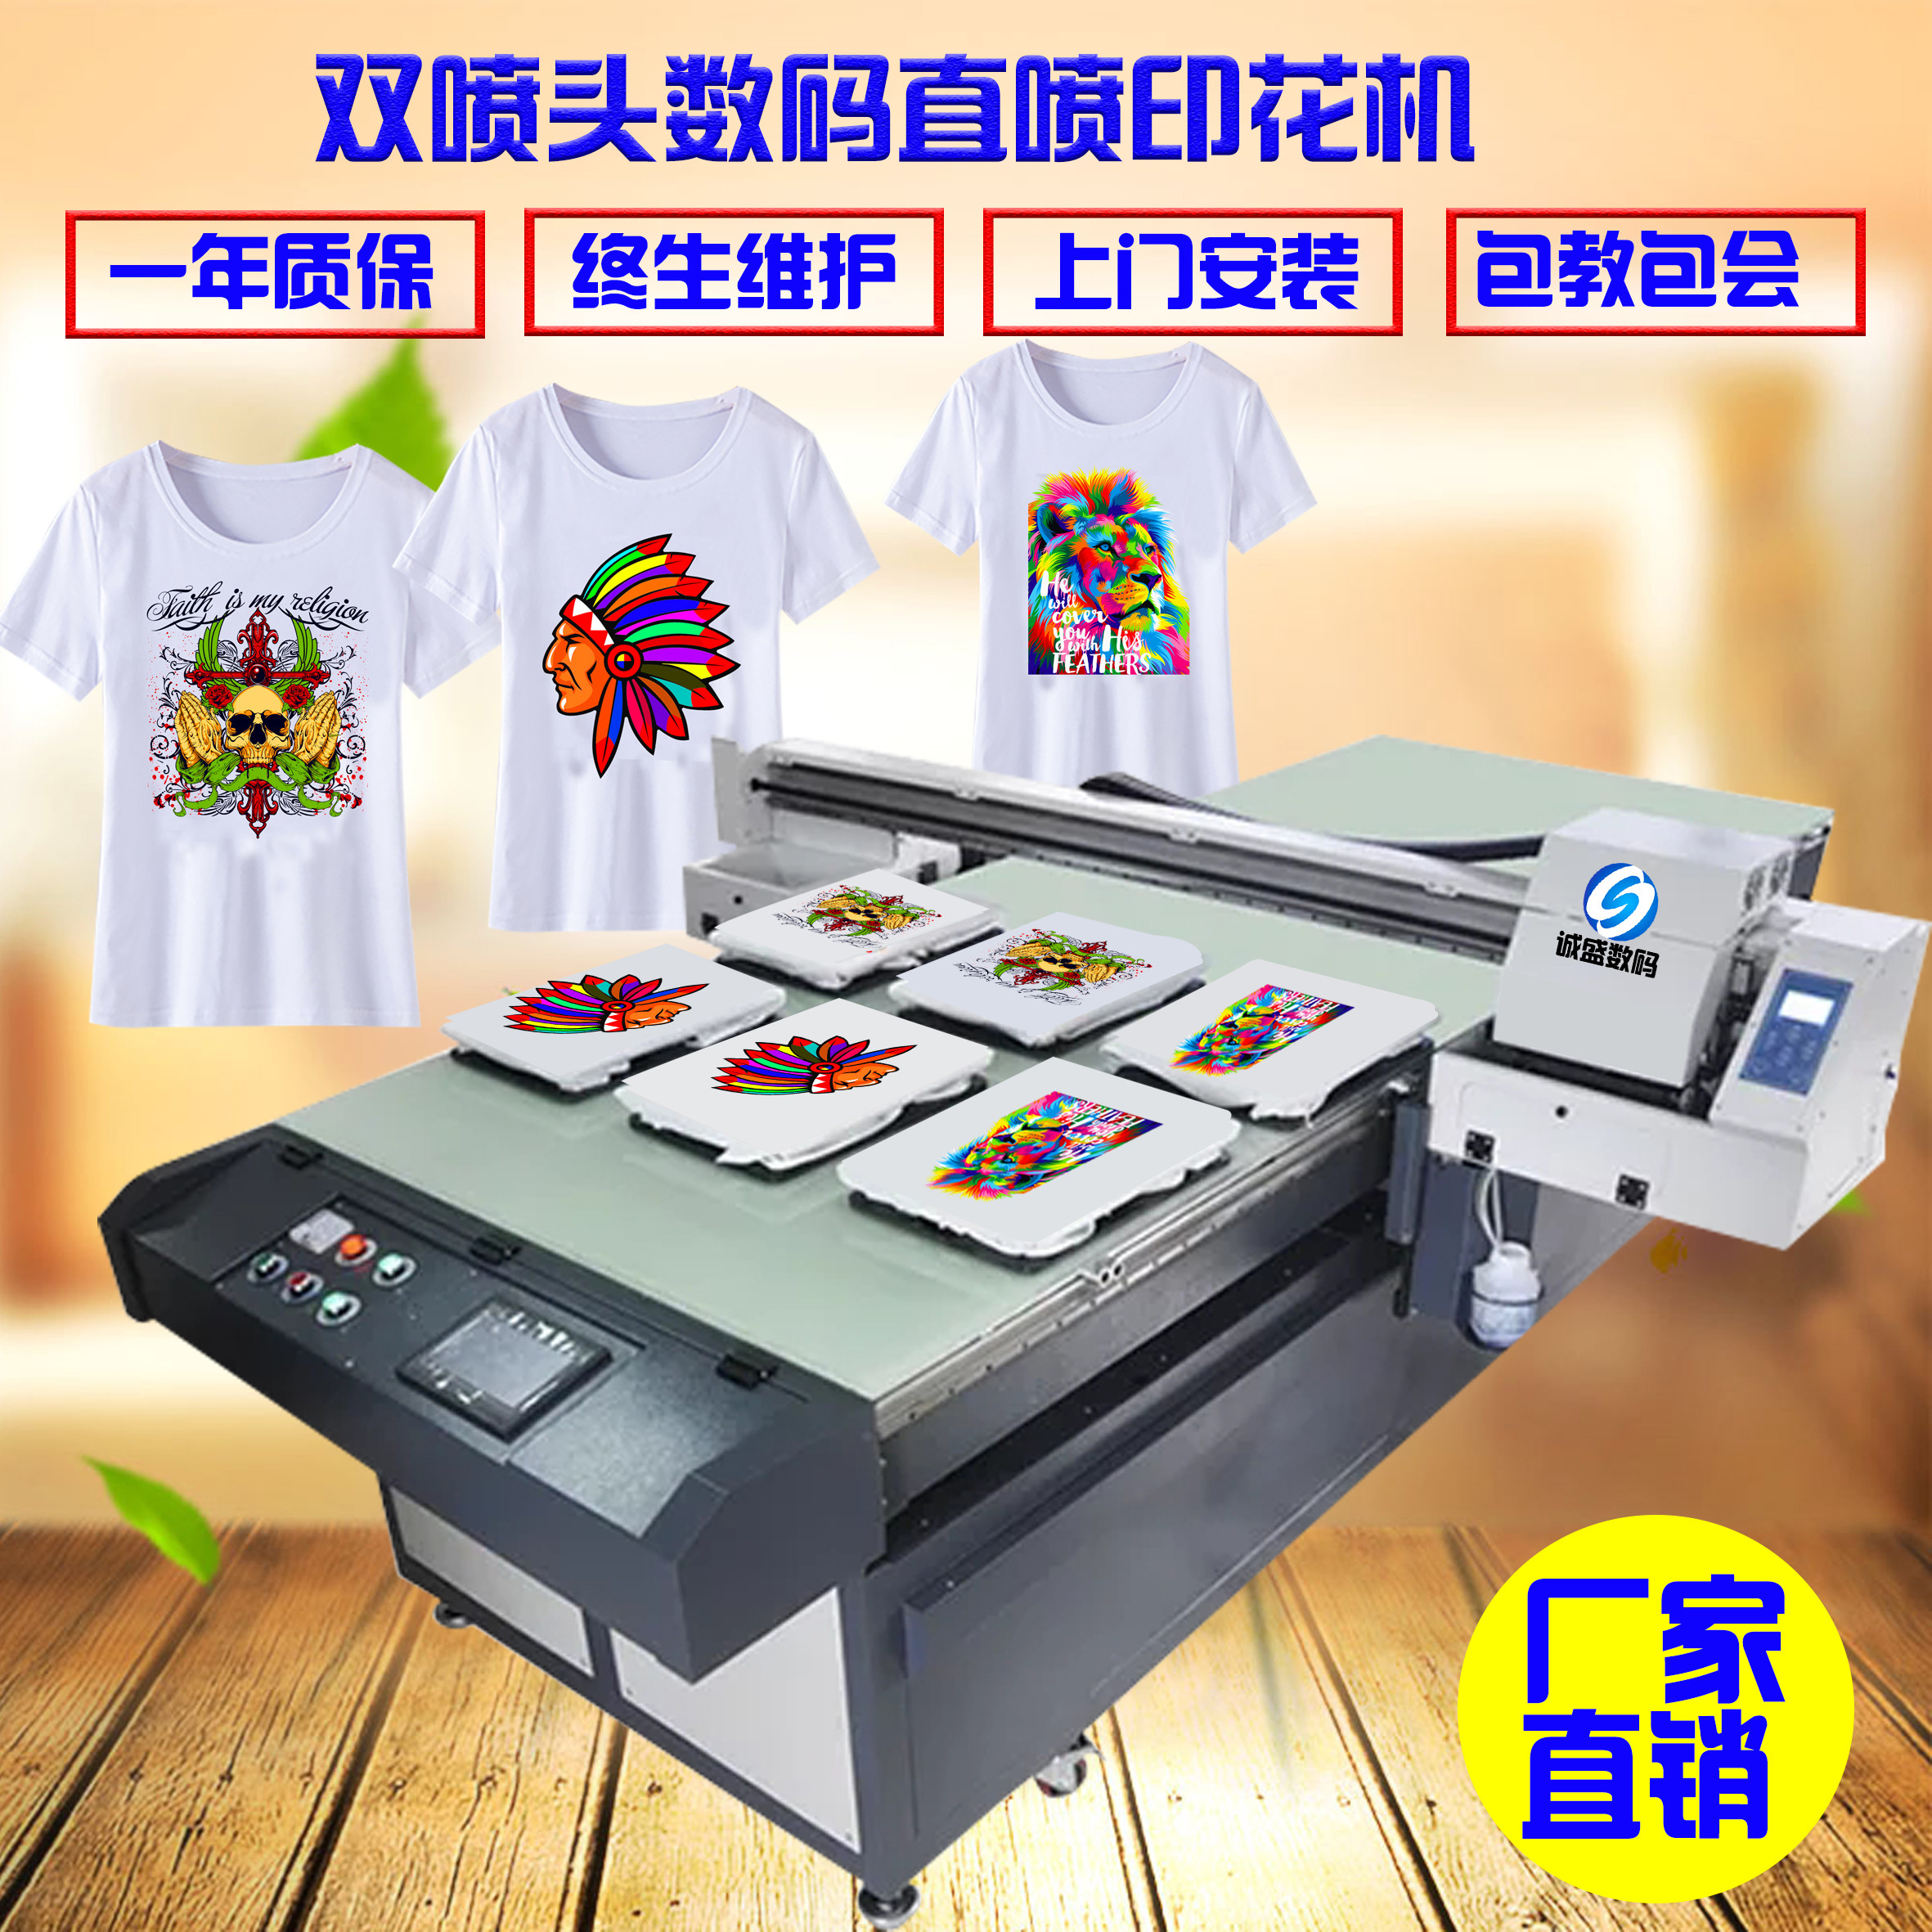 诚盛t恤打印机 衣服服装布料数码直喷印花机牛仔裤喷墨印刷机器